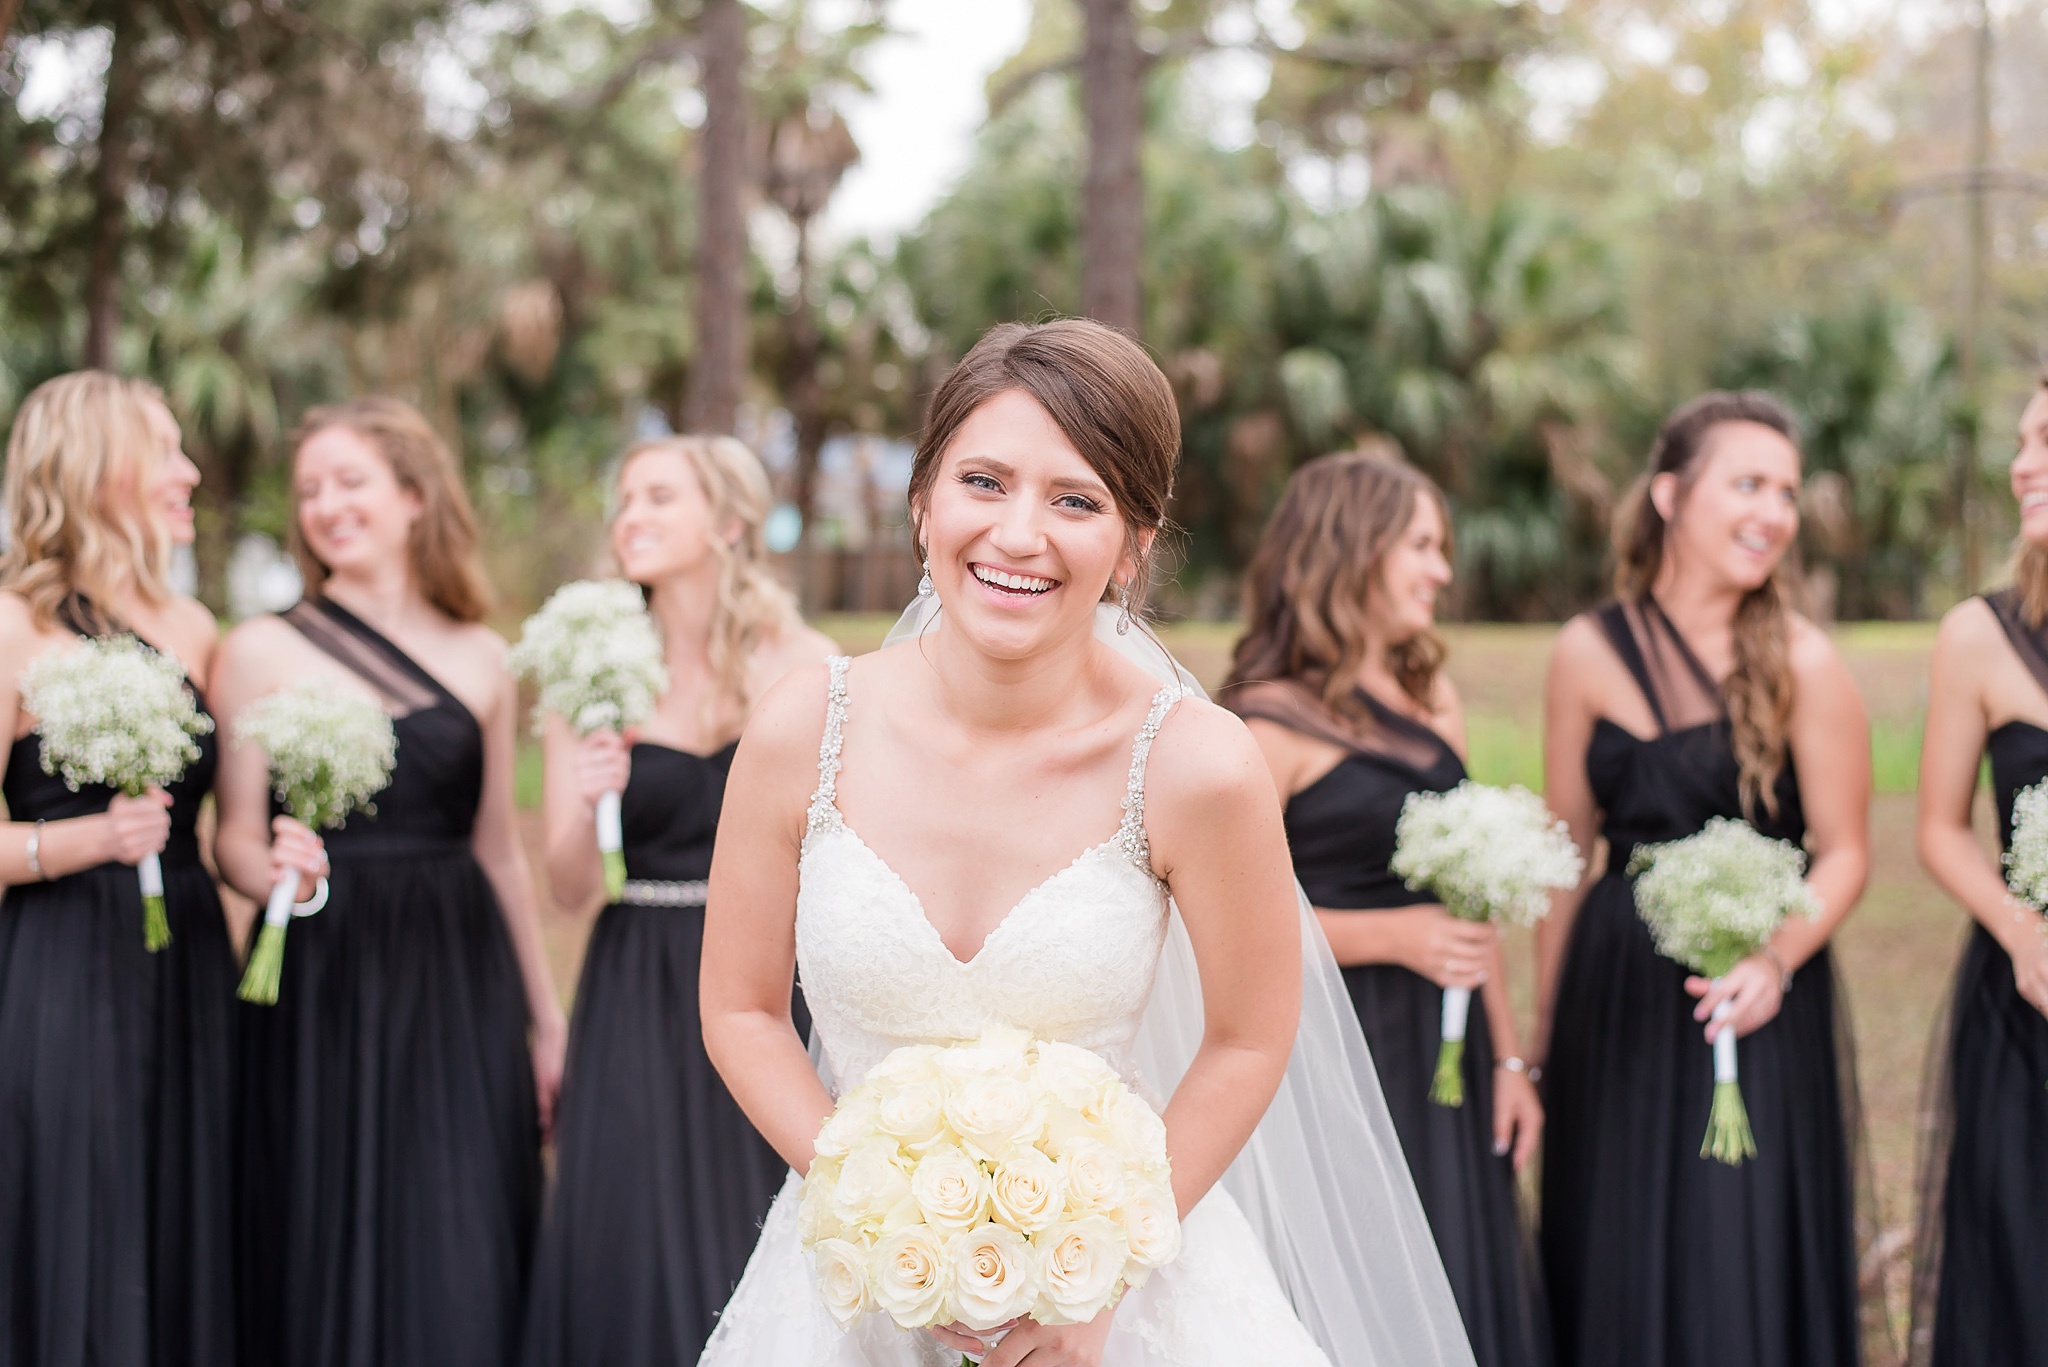 Niceville Destin Florida Wedding | Birmingham Alabama Wedding Photographers_0015.jpg